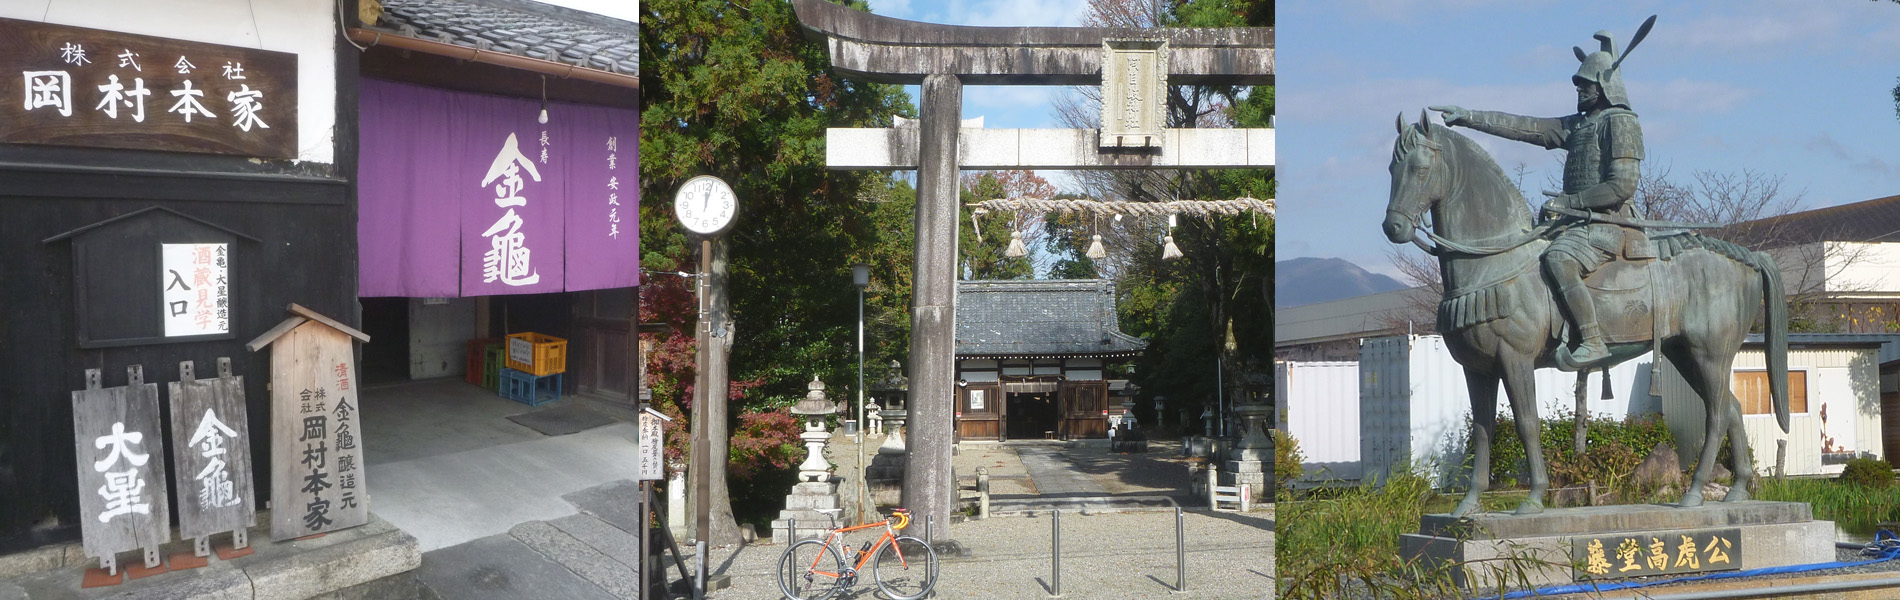 サイクルトレインで行くサイクリングツアー「湖東地域の酒蔵と地域の文化歴史を訪ねて～愛知川、豊郷、甲良編～」